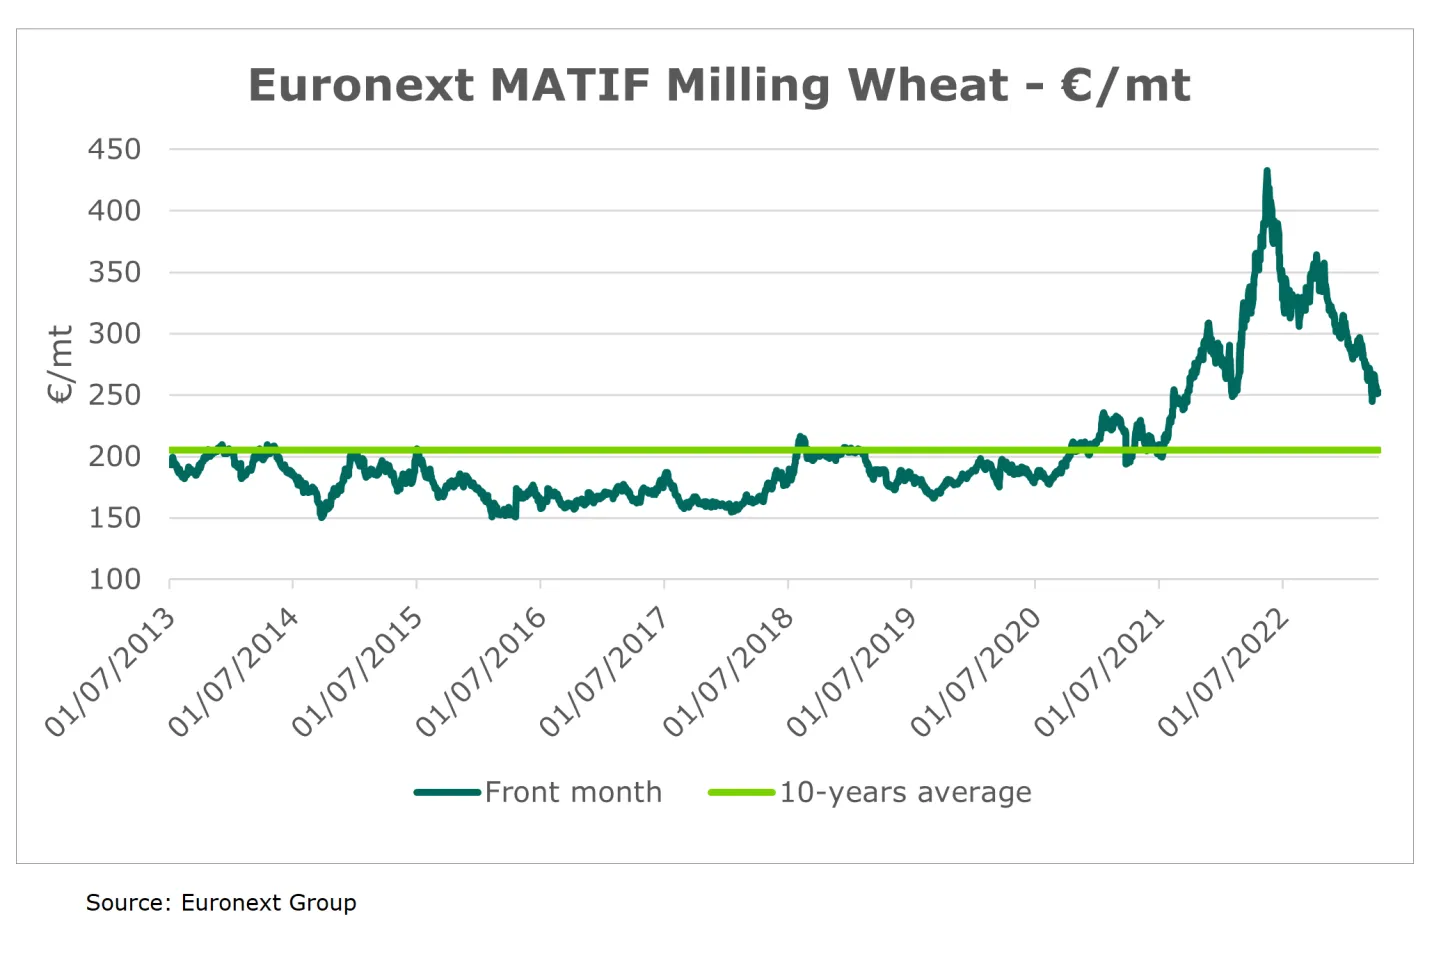 Euronext Matif - Euronext Milling Wheat Futures 10-year average